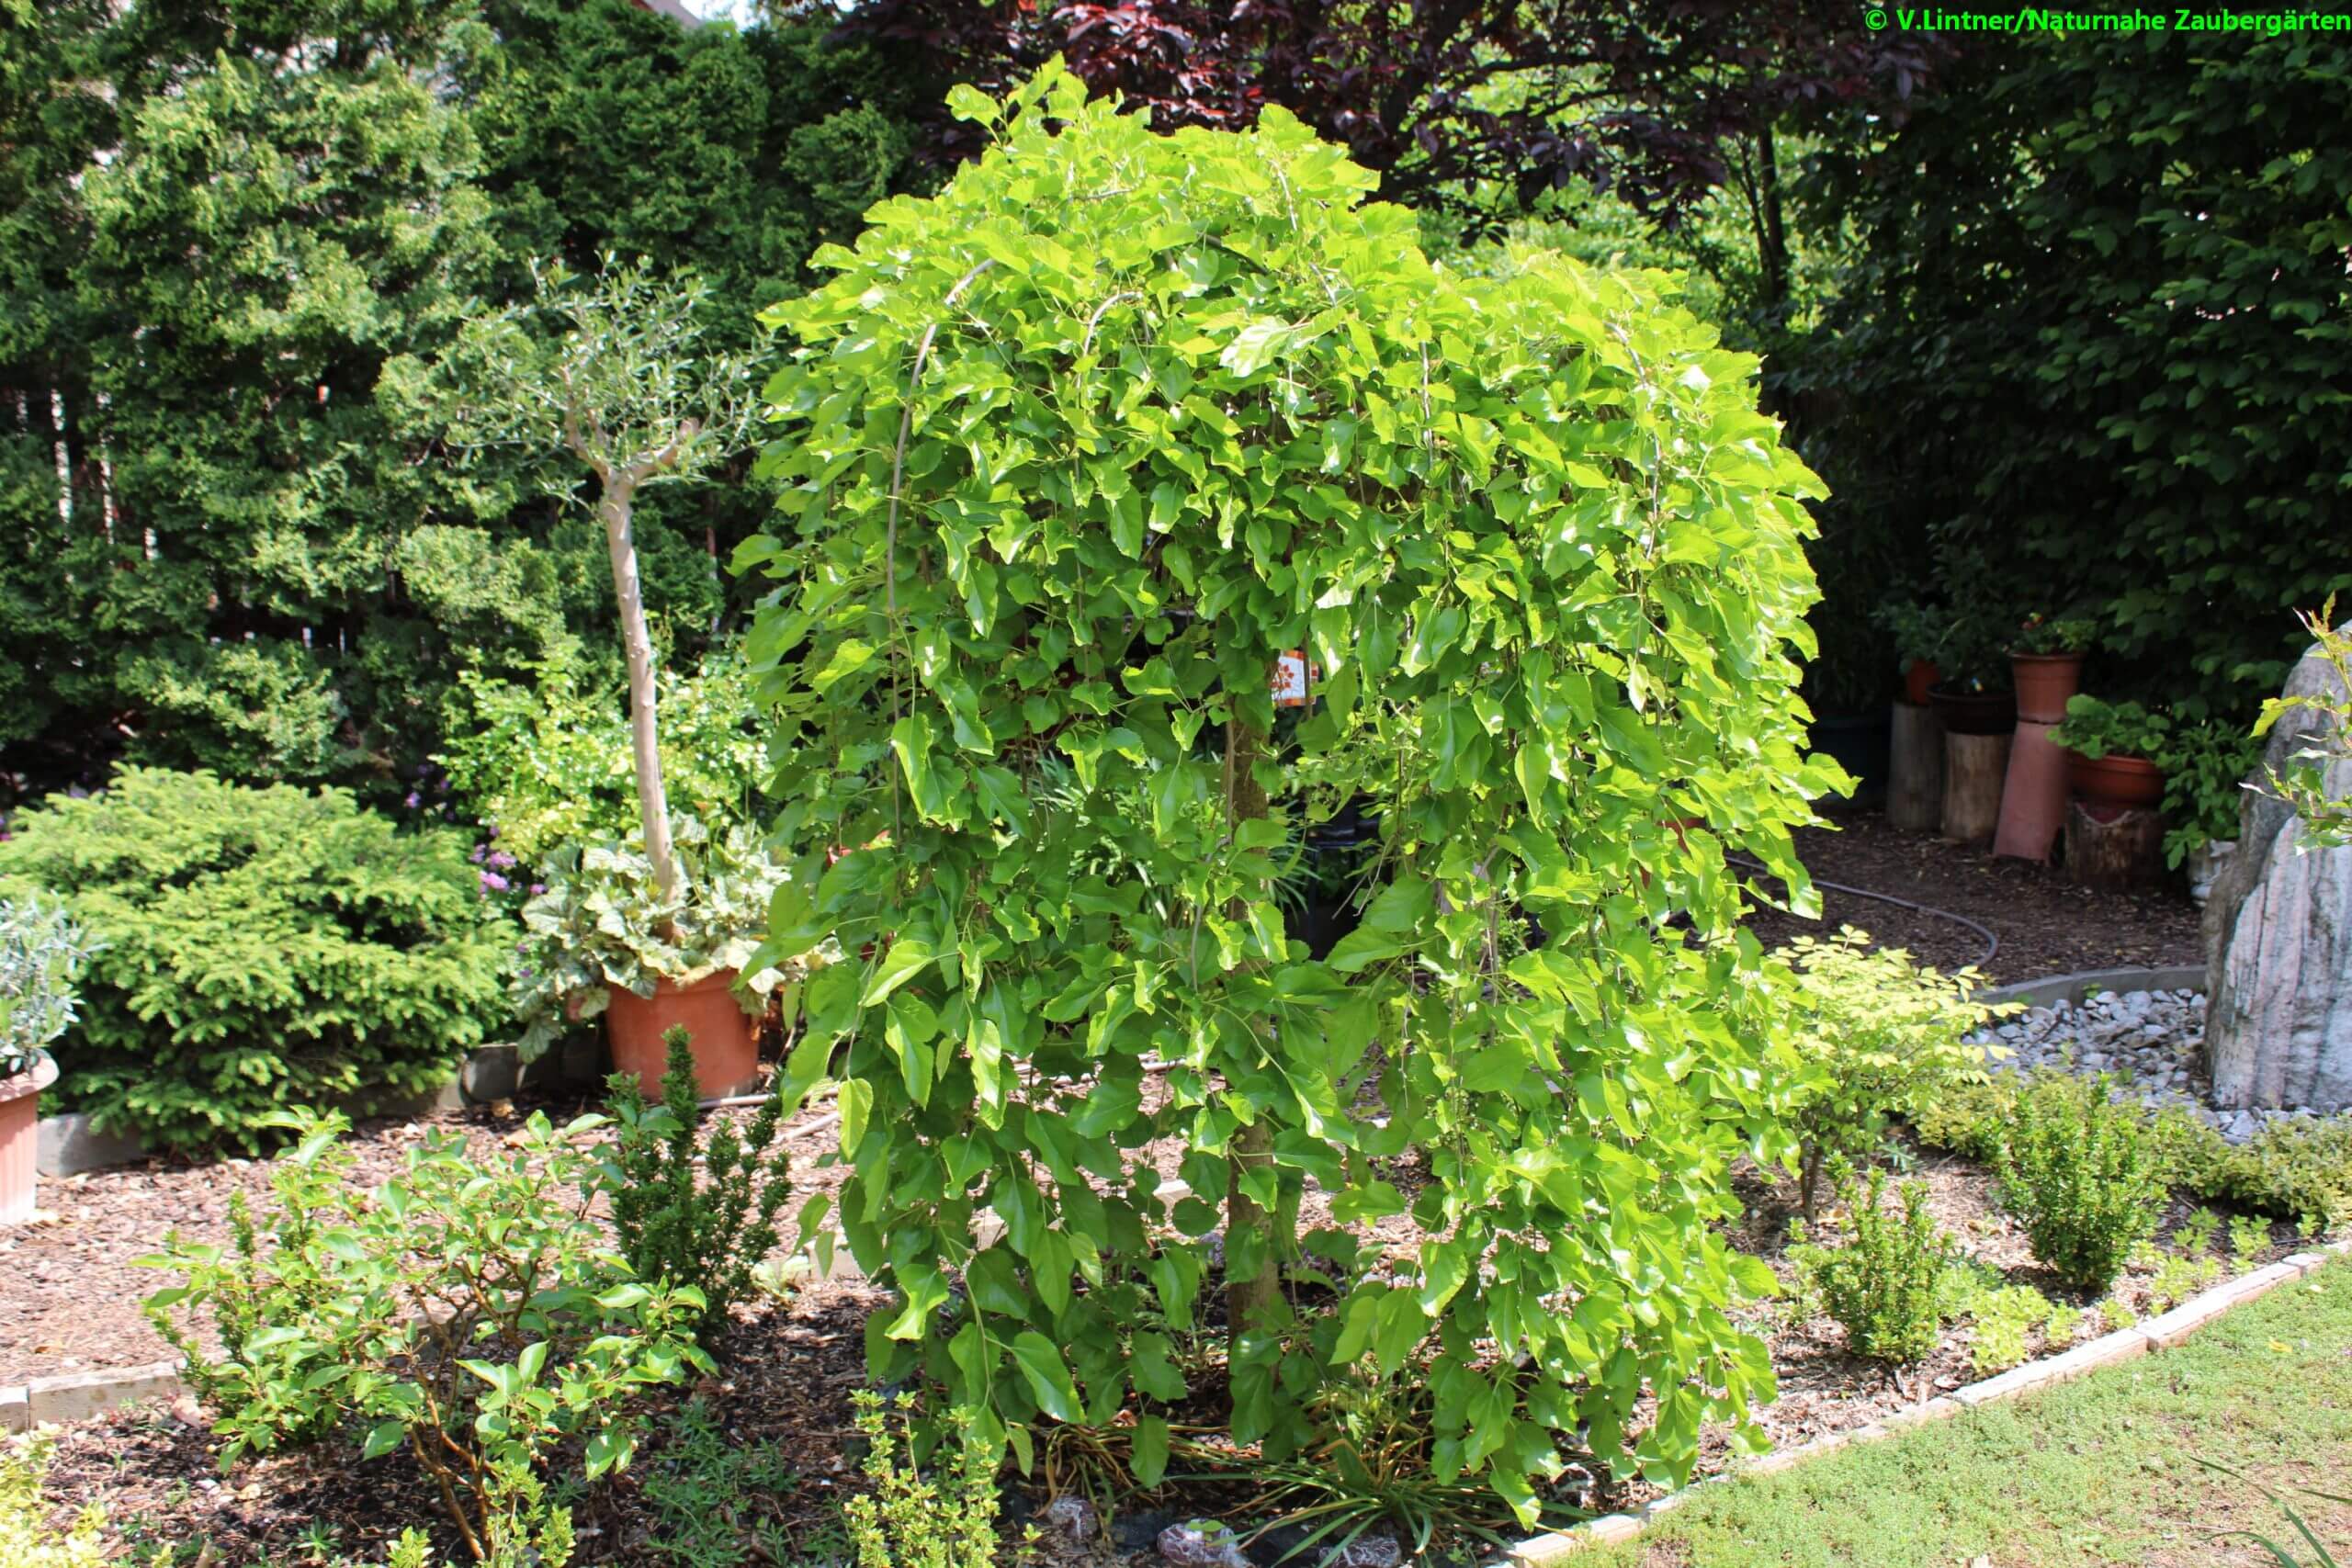 Maulbeerbaum als Hängeform, auch für kleinere Gärten geeignet - Naturnahe Zaubergärten